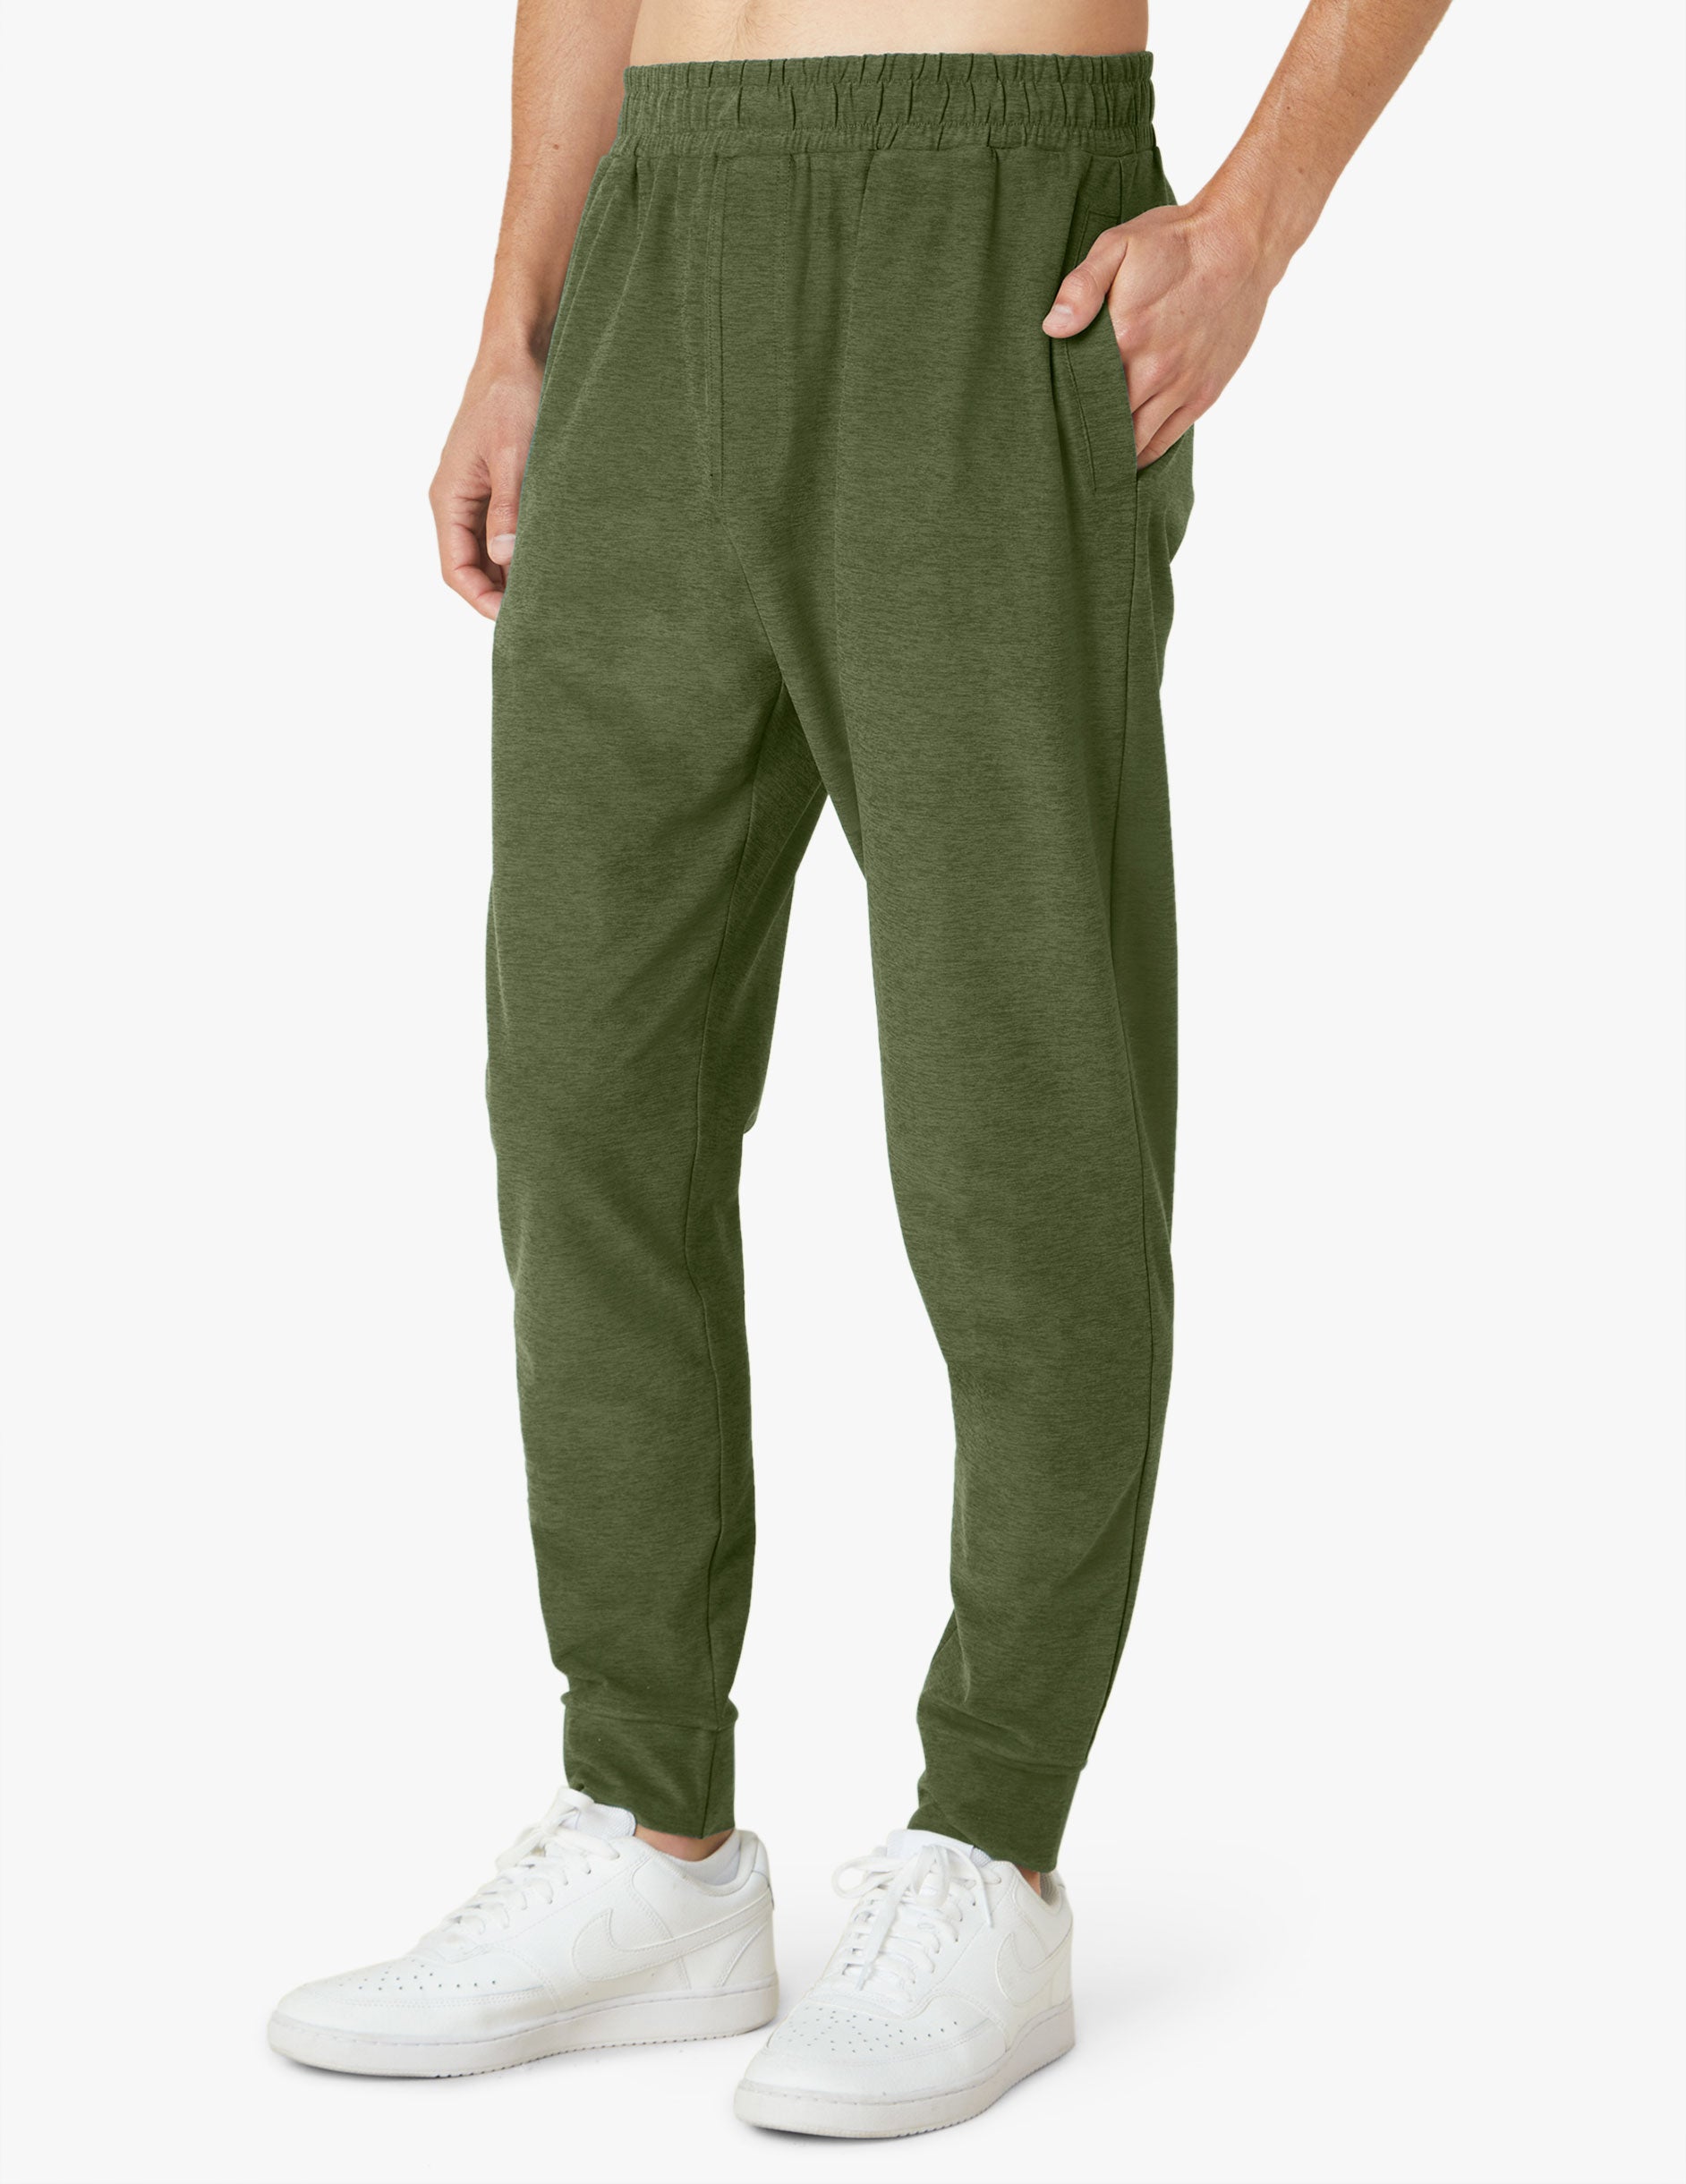 green mens sweatpants with drawstring at waist